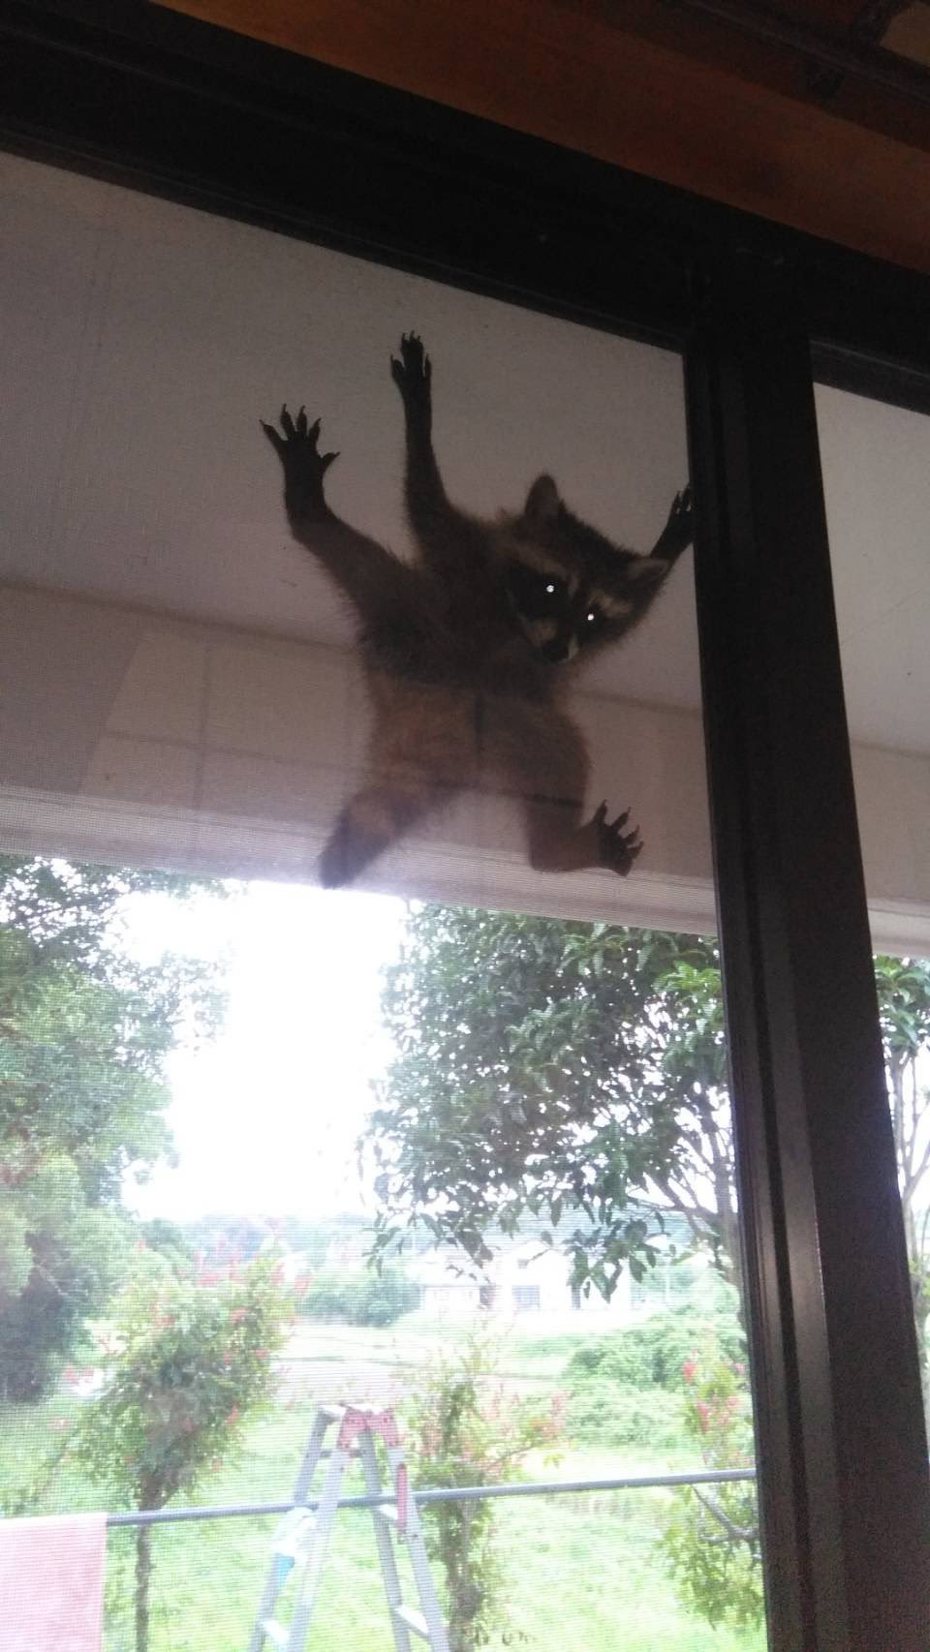 一隻浣熊卡在紗窗上動彈不得，乍看相當像經典恐怖電影「大法師」名場面。 (圖/取自推特「九十九」)